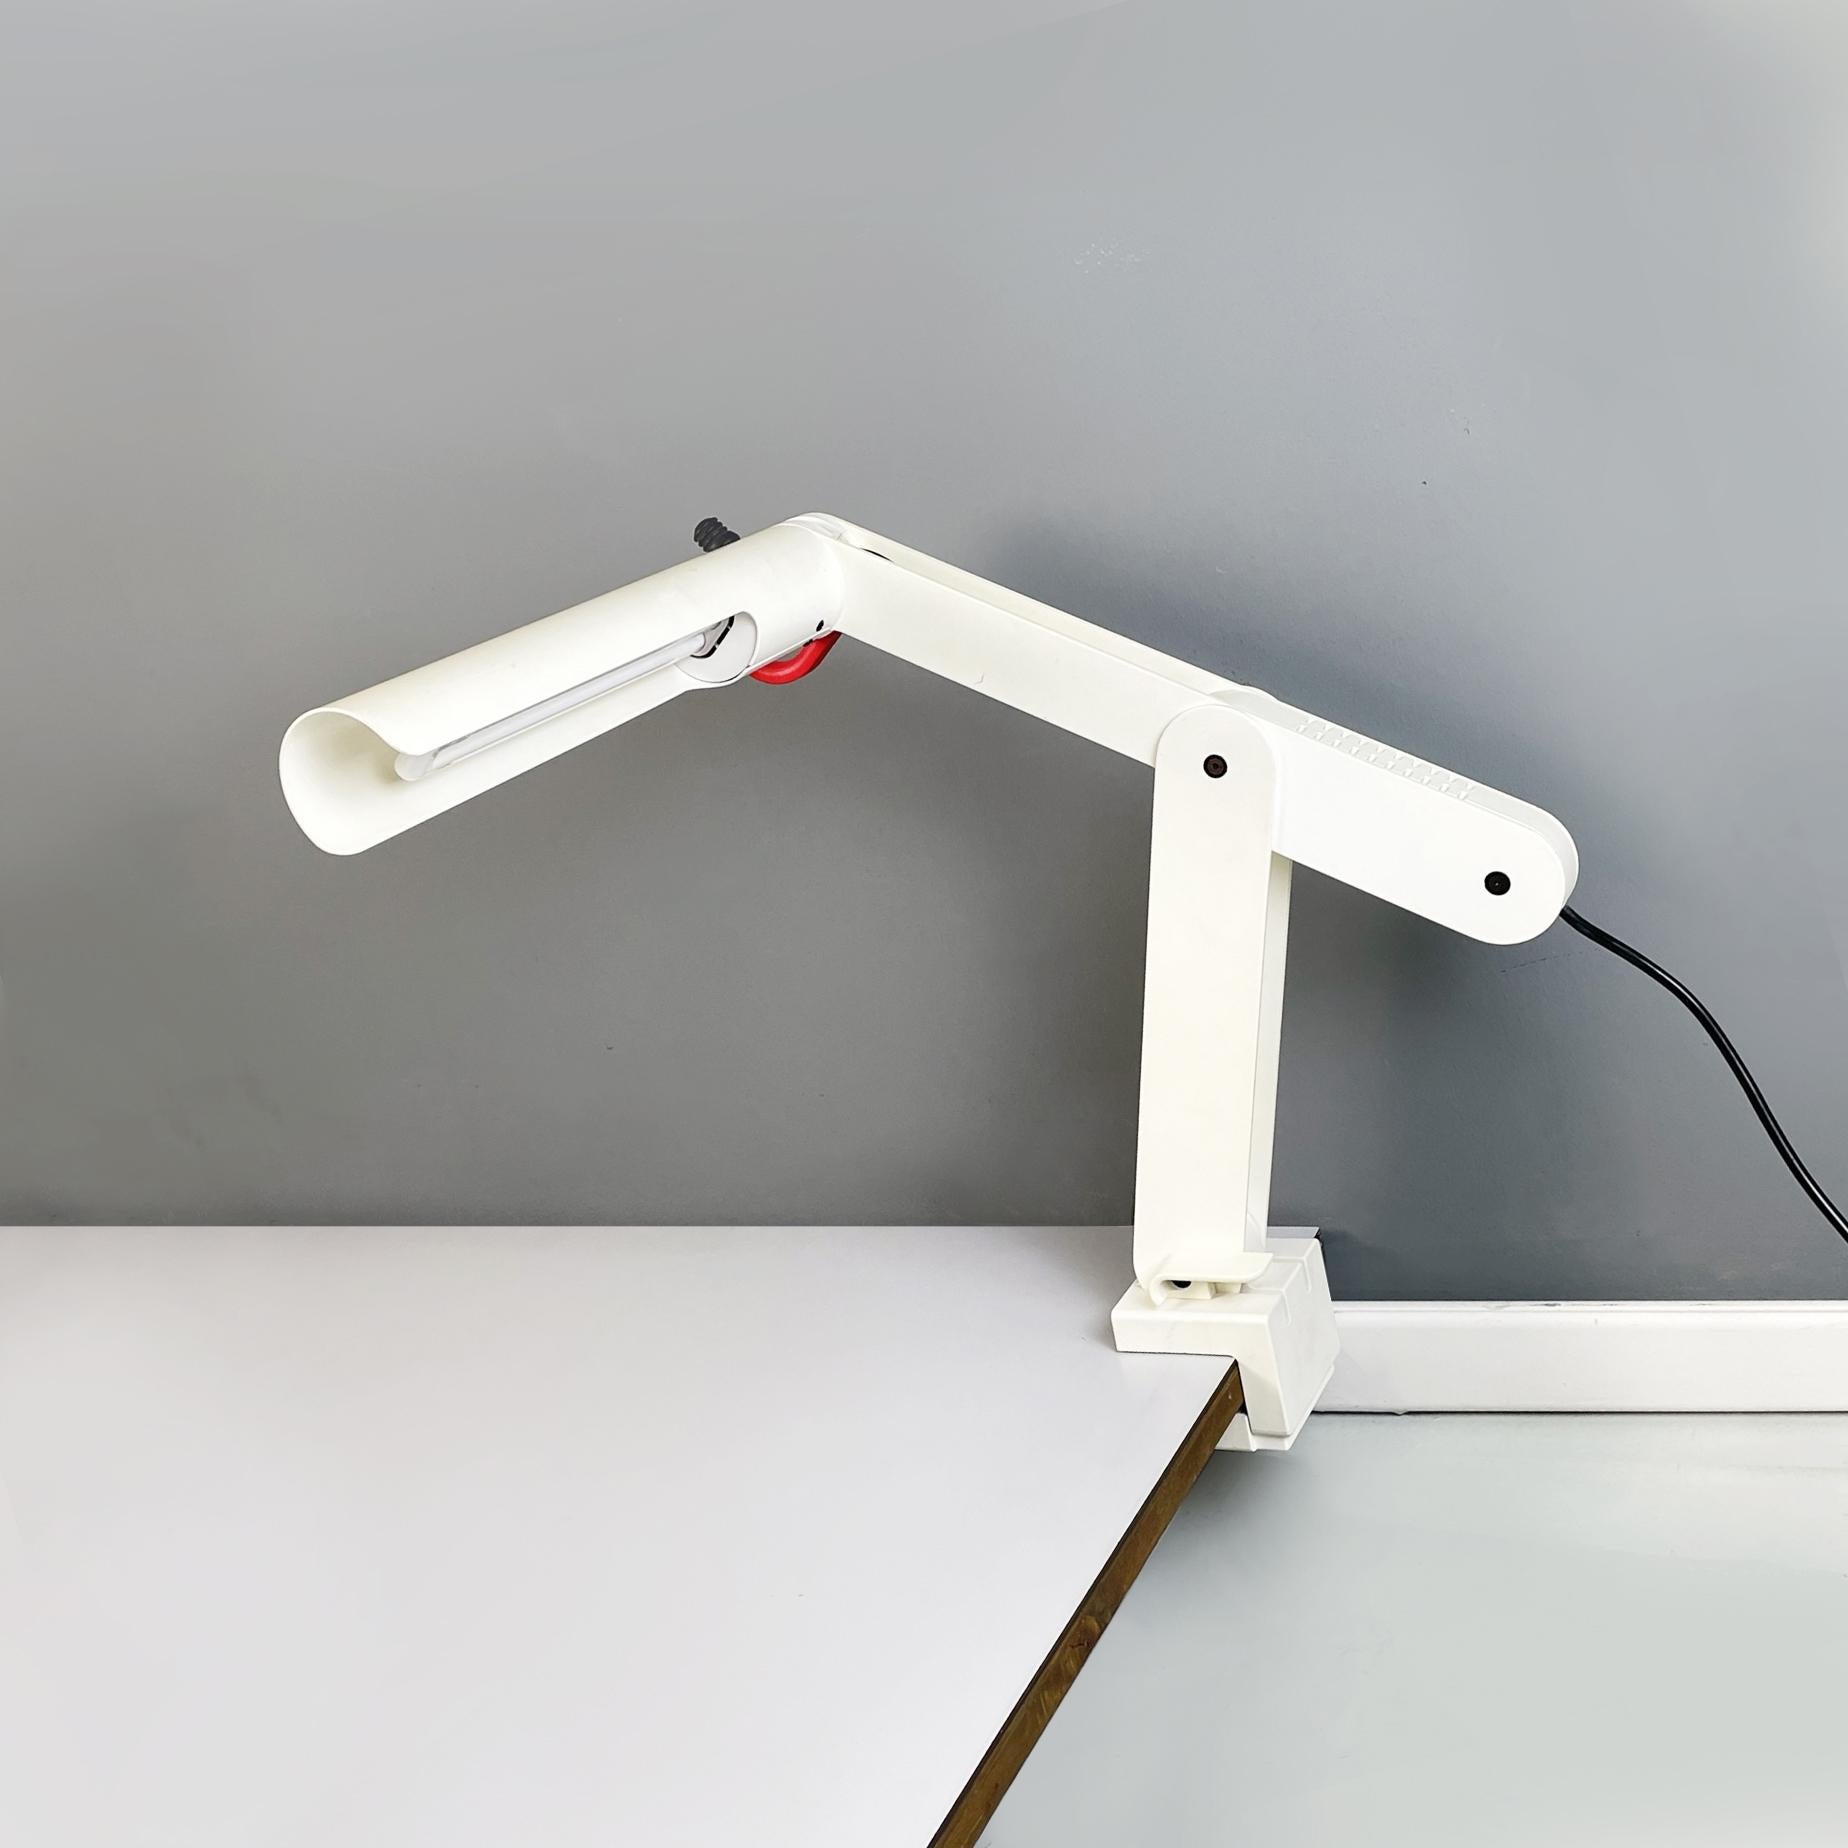 Lampe de bureau italienne moderne réglable en métal blanc avec lampe, années 1980
Lampe de table réglable en métal. Le diffuseur cylindrique est en métal blanc avec une poignée en plastique rouge. La lampe a un bras avec un corps libre et l'autre